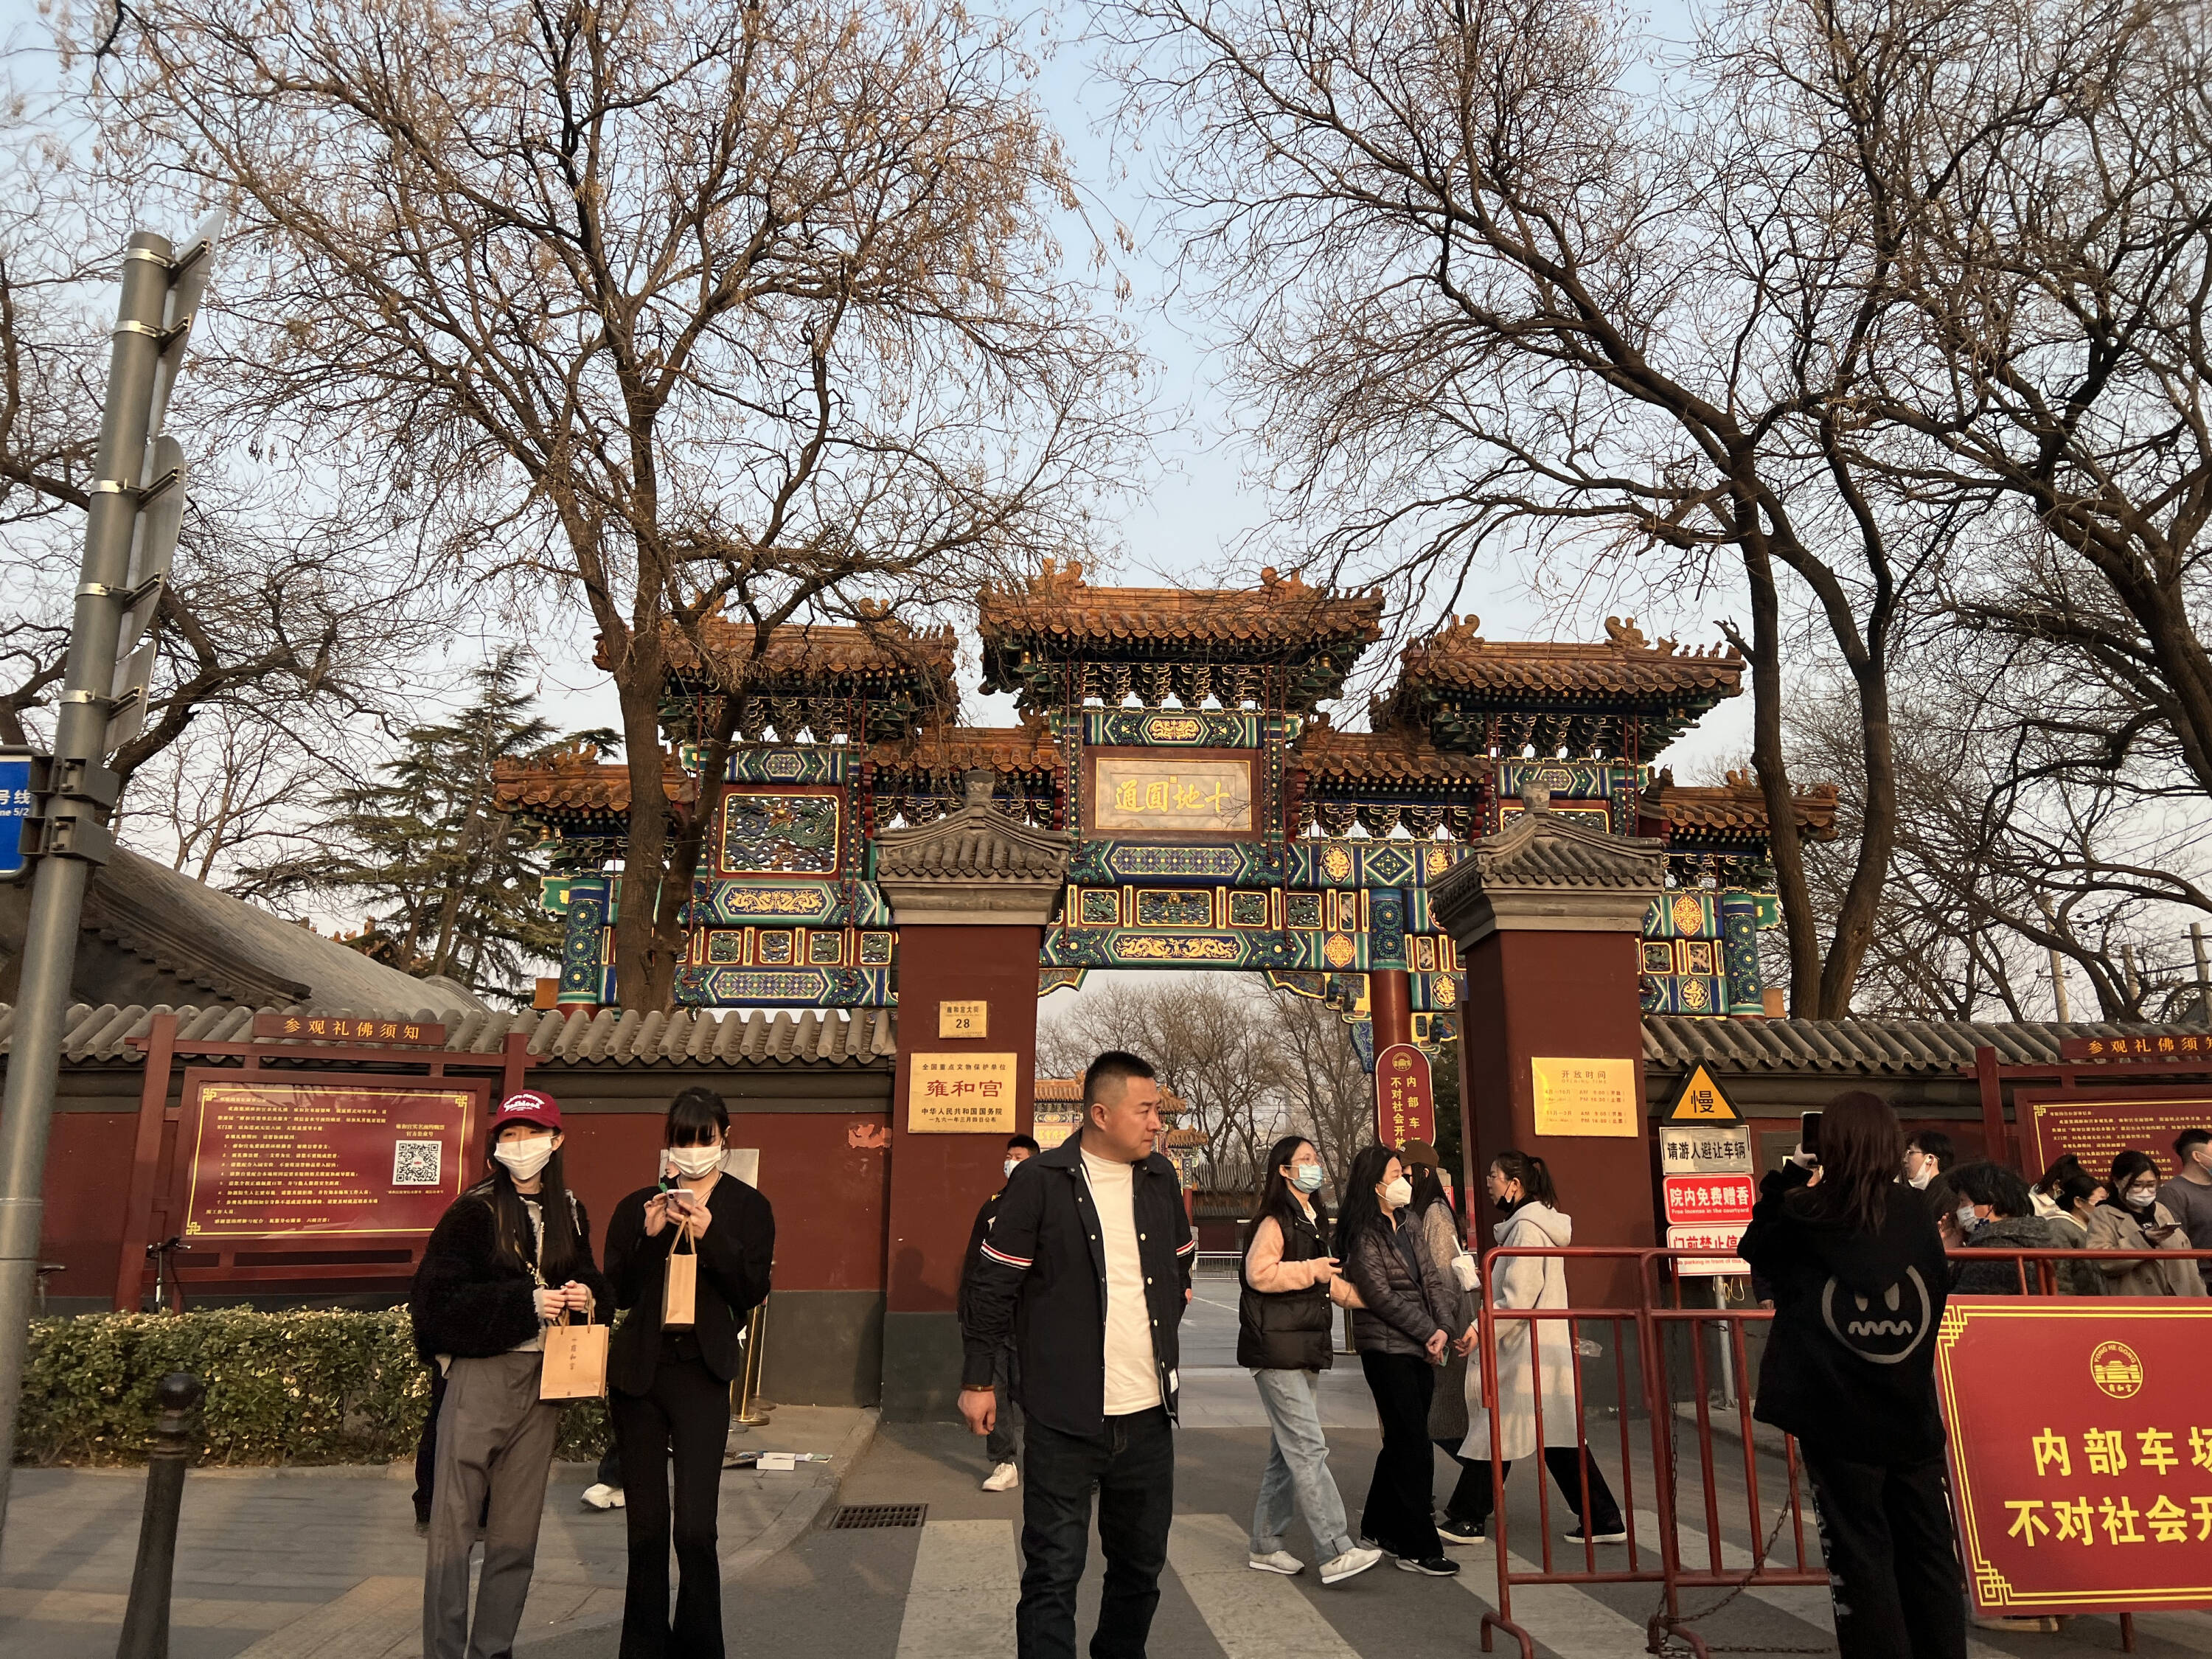 Entrada del Templo Lama, en Pekín (China)